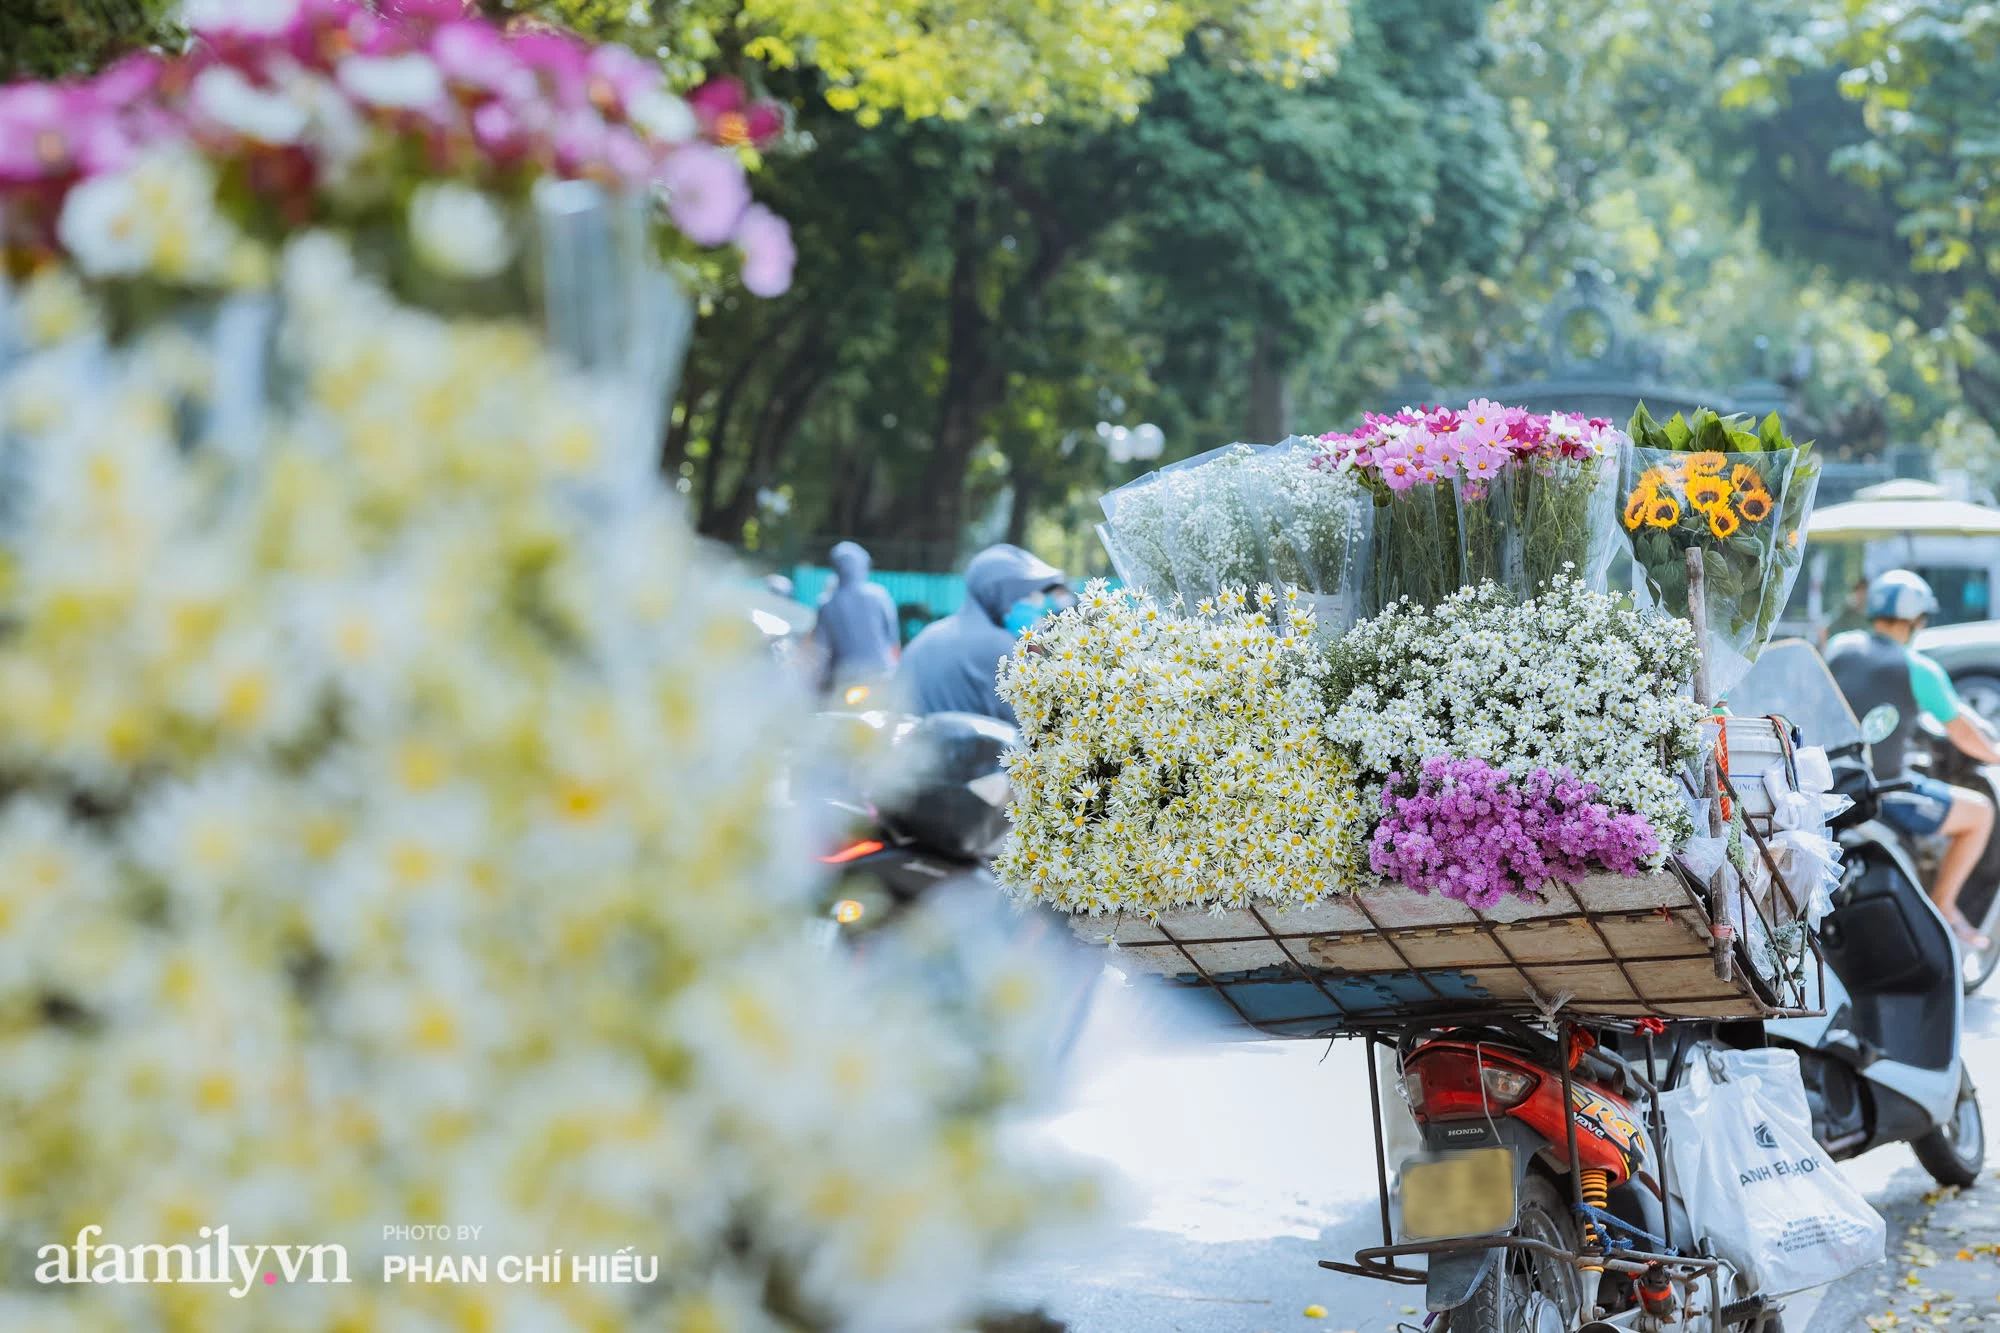 Đến hẹn lại lên, phố phường Hà Nội ngập tràn cúc họa mi, nhiều người tranh thủ lưu lại khoảnh khắc với mùa thu - Ảnh 1.